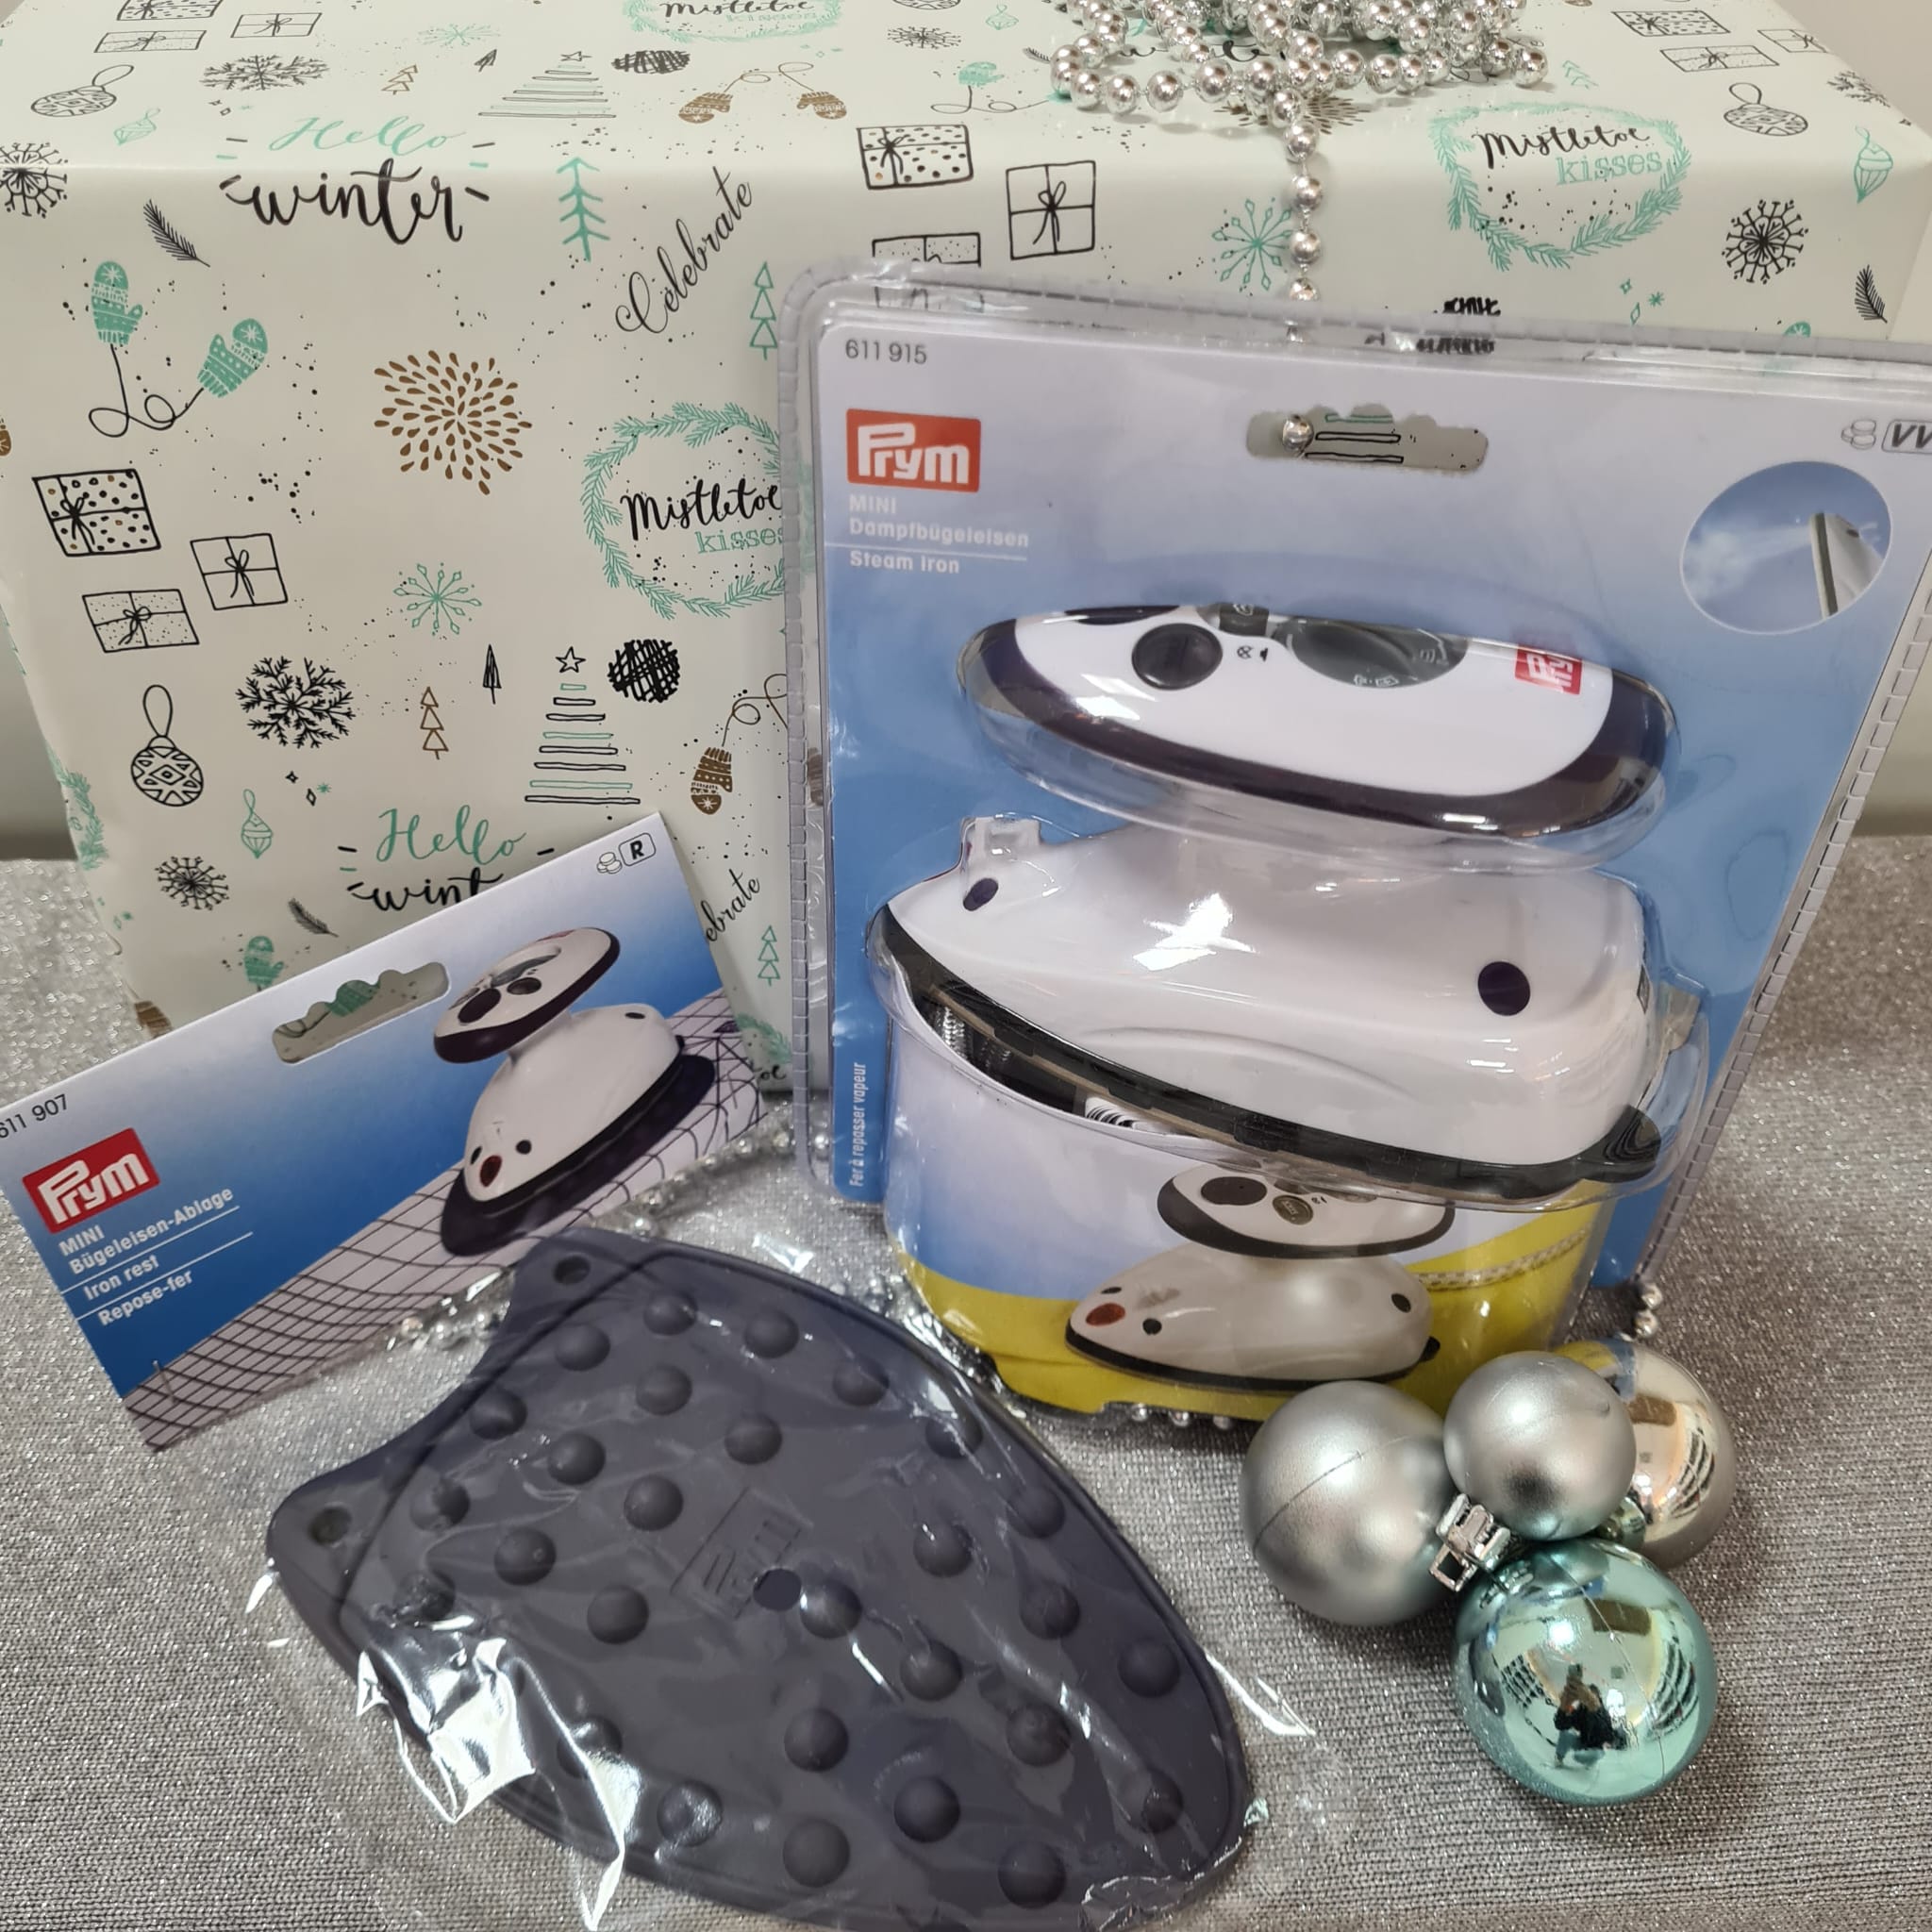 Weihnachtsgeschenk - Prym Dampfbügeleisen Mini & Bügeleisen Ablage weihnachtlich verpackt